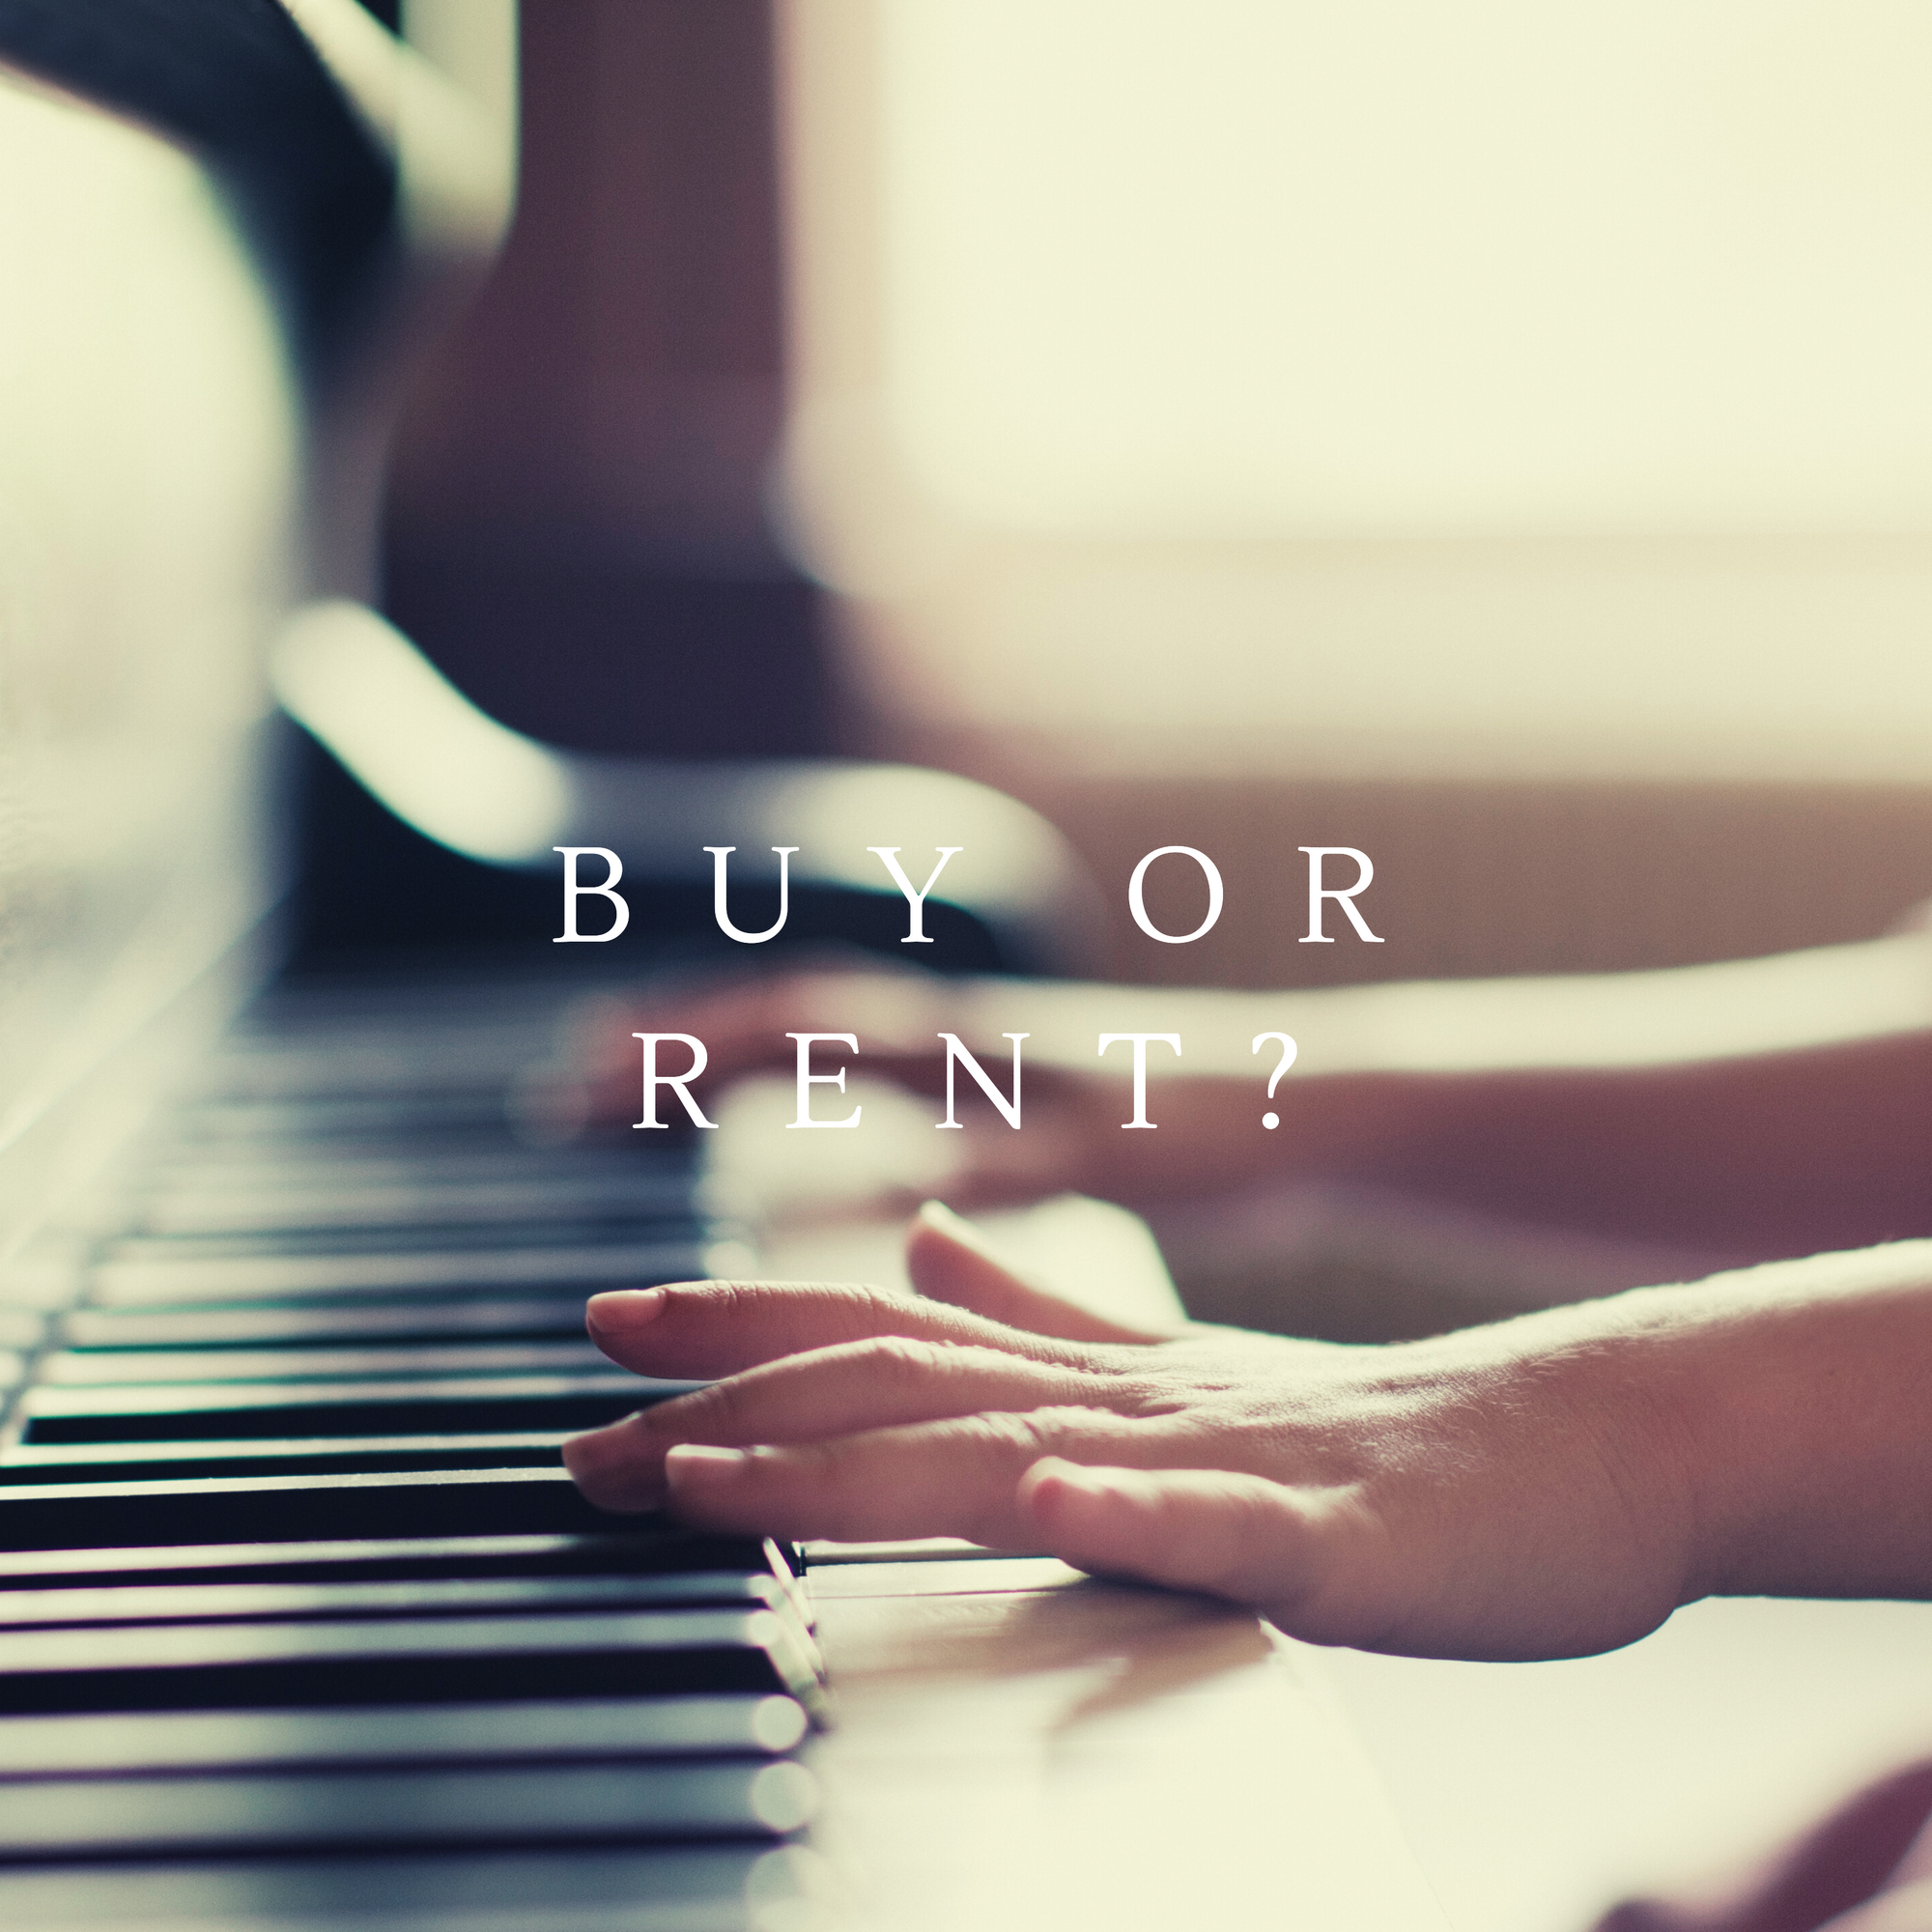 Should I Buy or Rent a Piano?